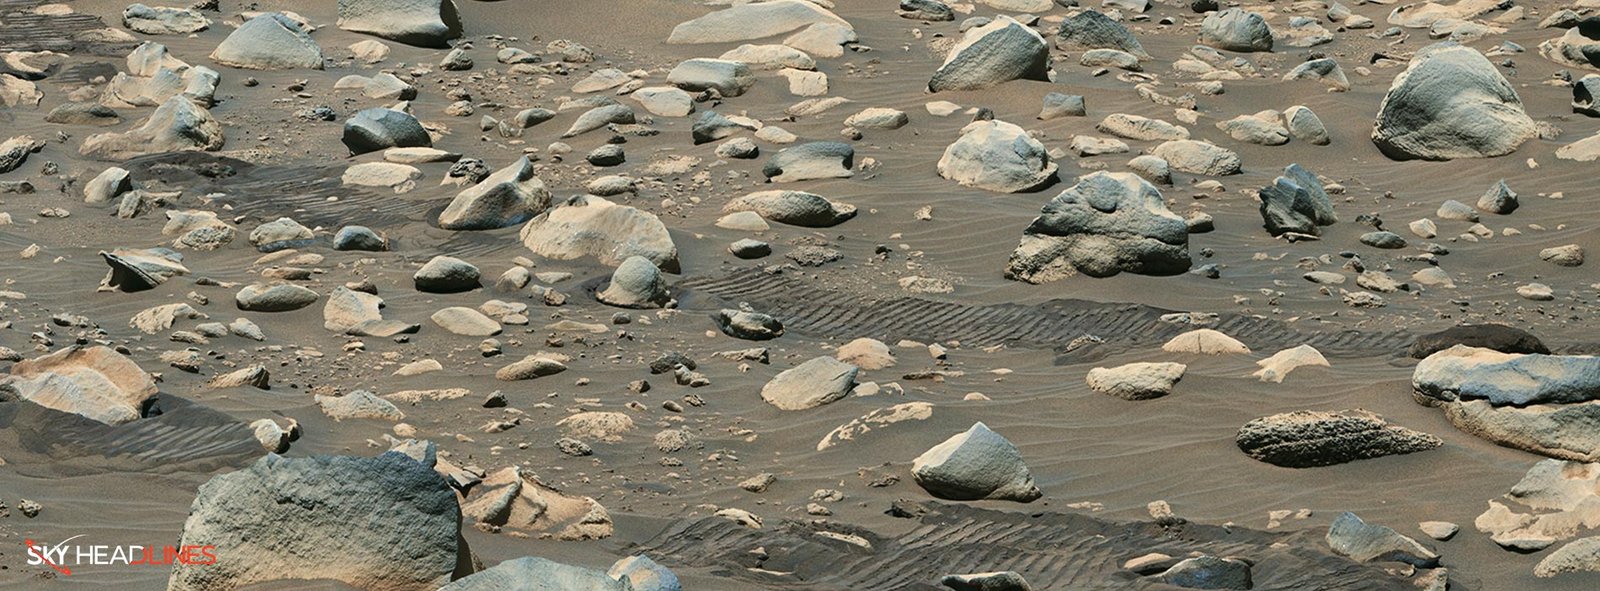 River in Mars